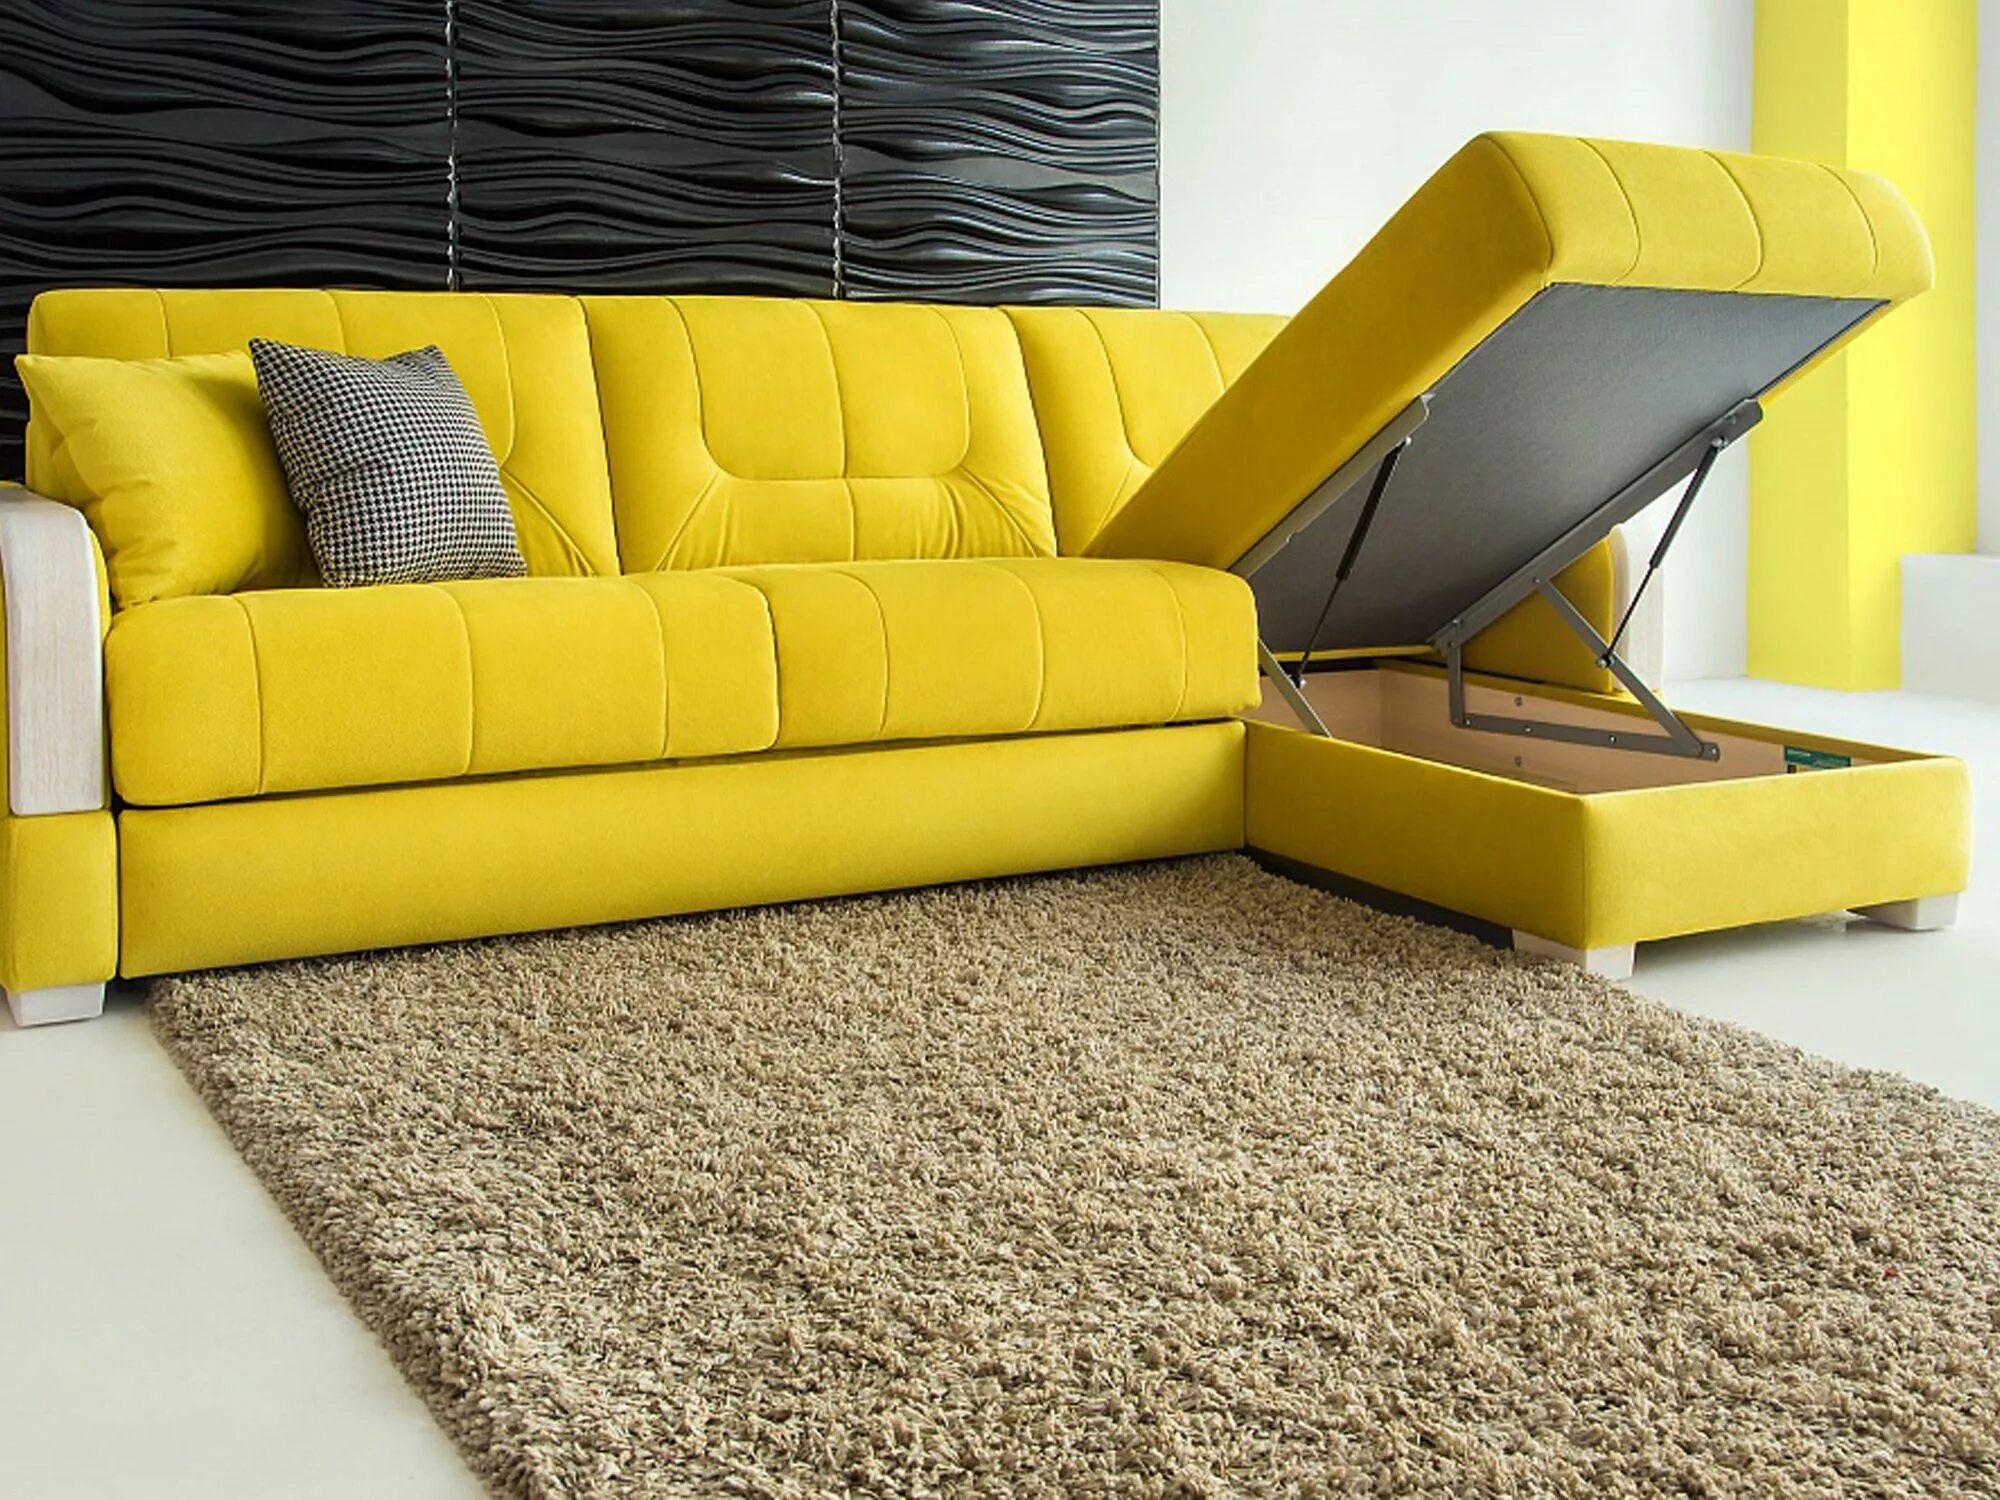 Купить диван лучшего производителя. Красивые диваны. Желтый диван. Диваны модные тенденции. Яркий диван.